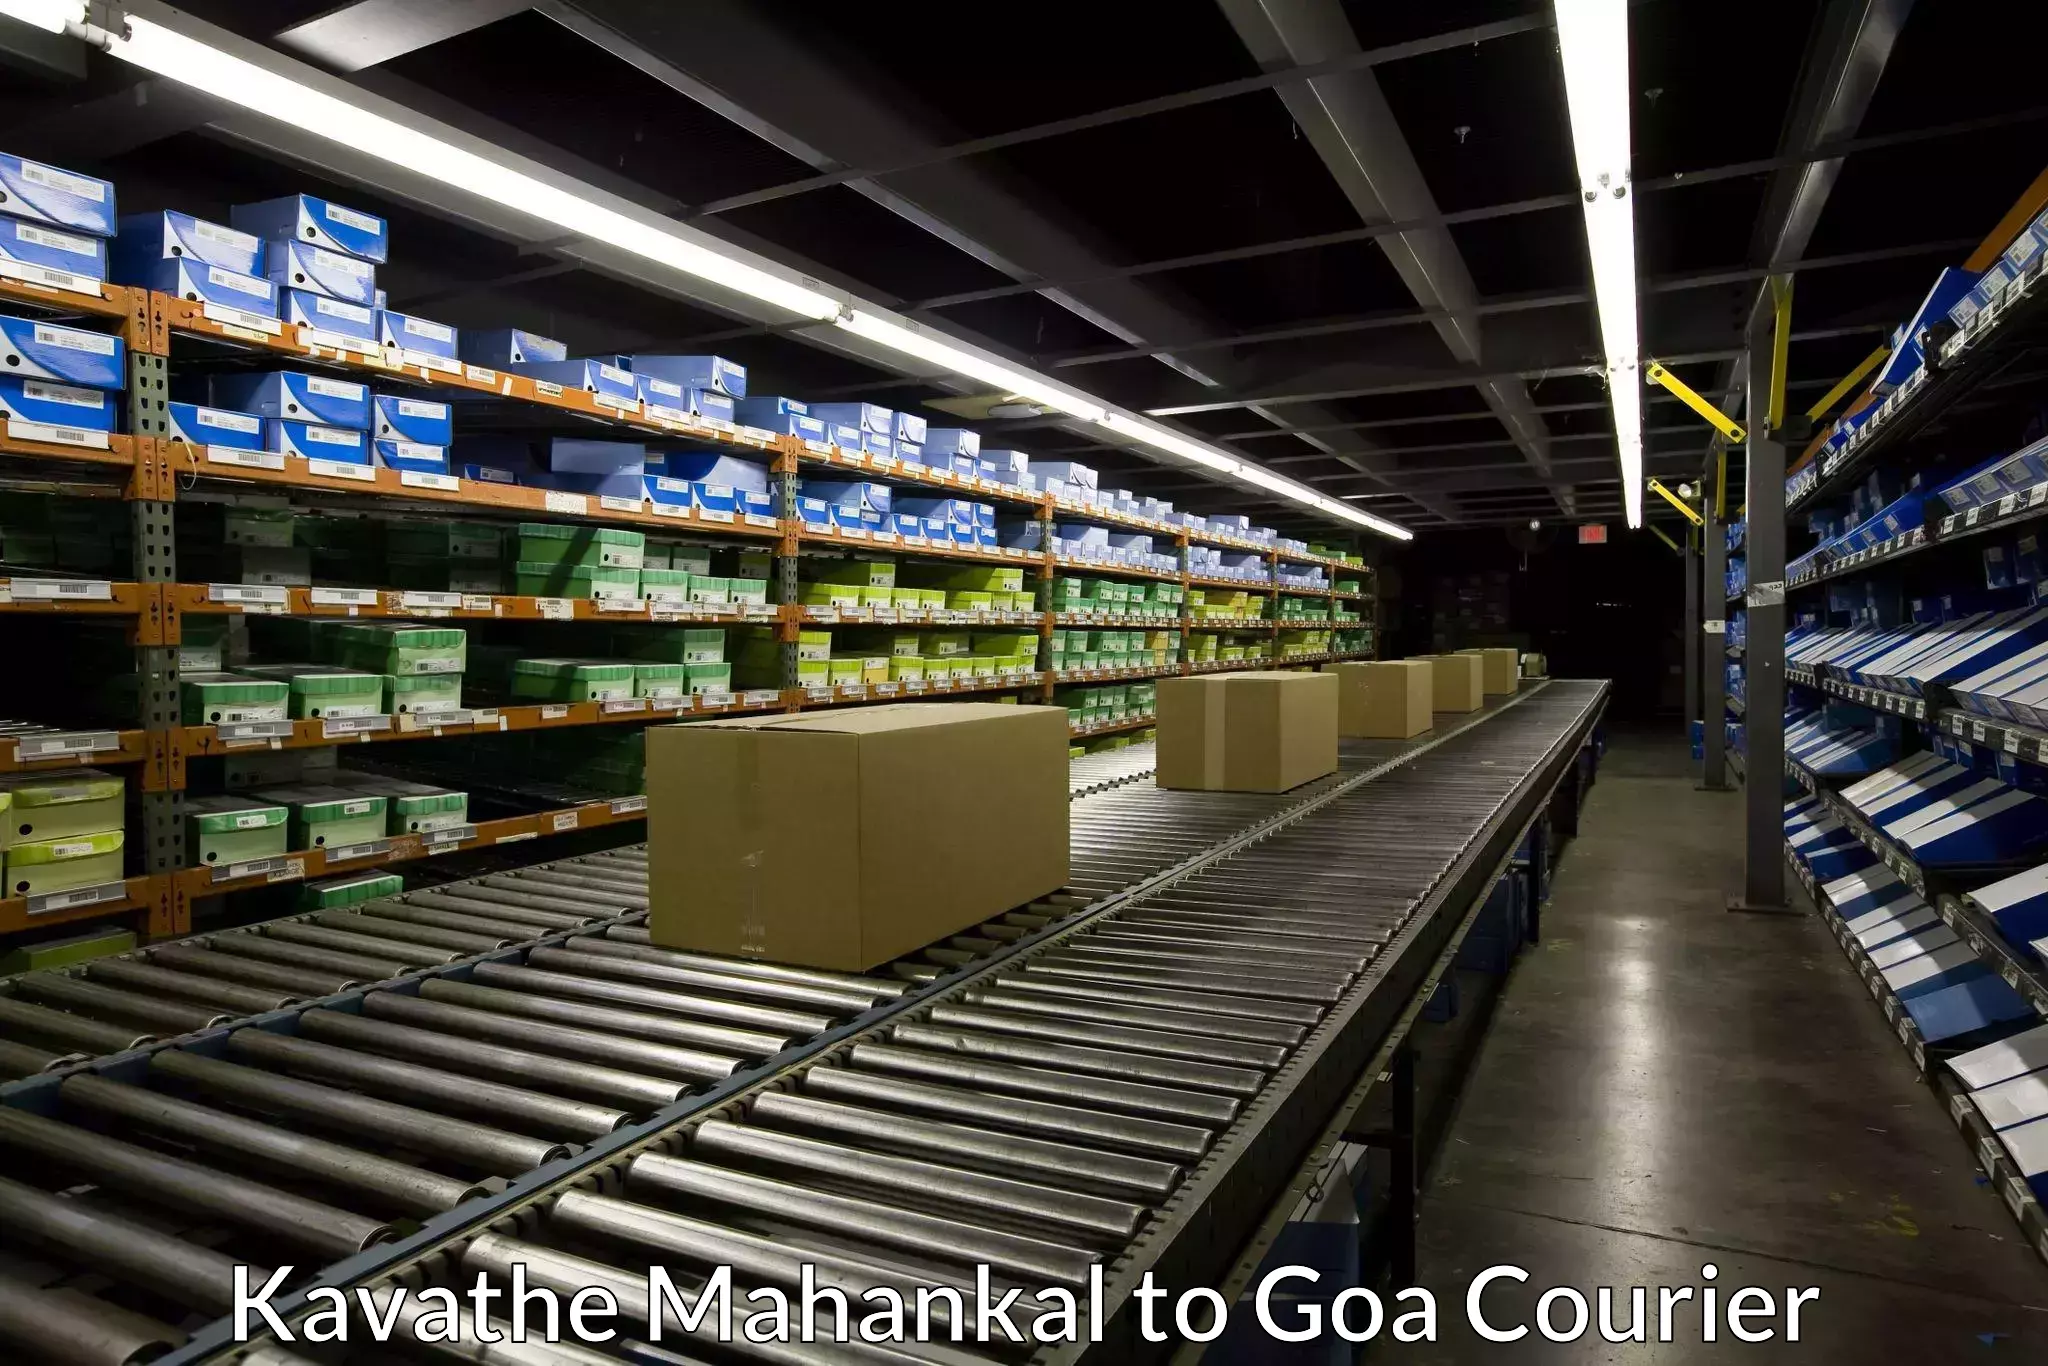 Door-to-door freight service Kavathe Mahankal to South Goa